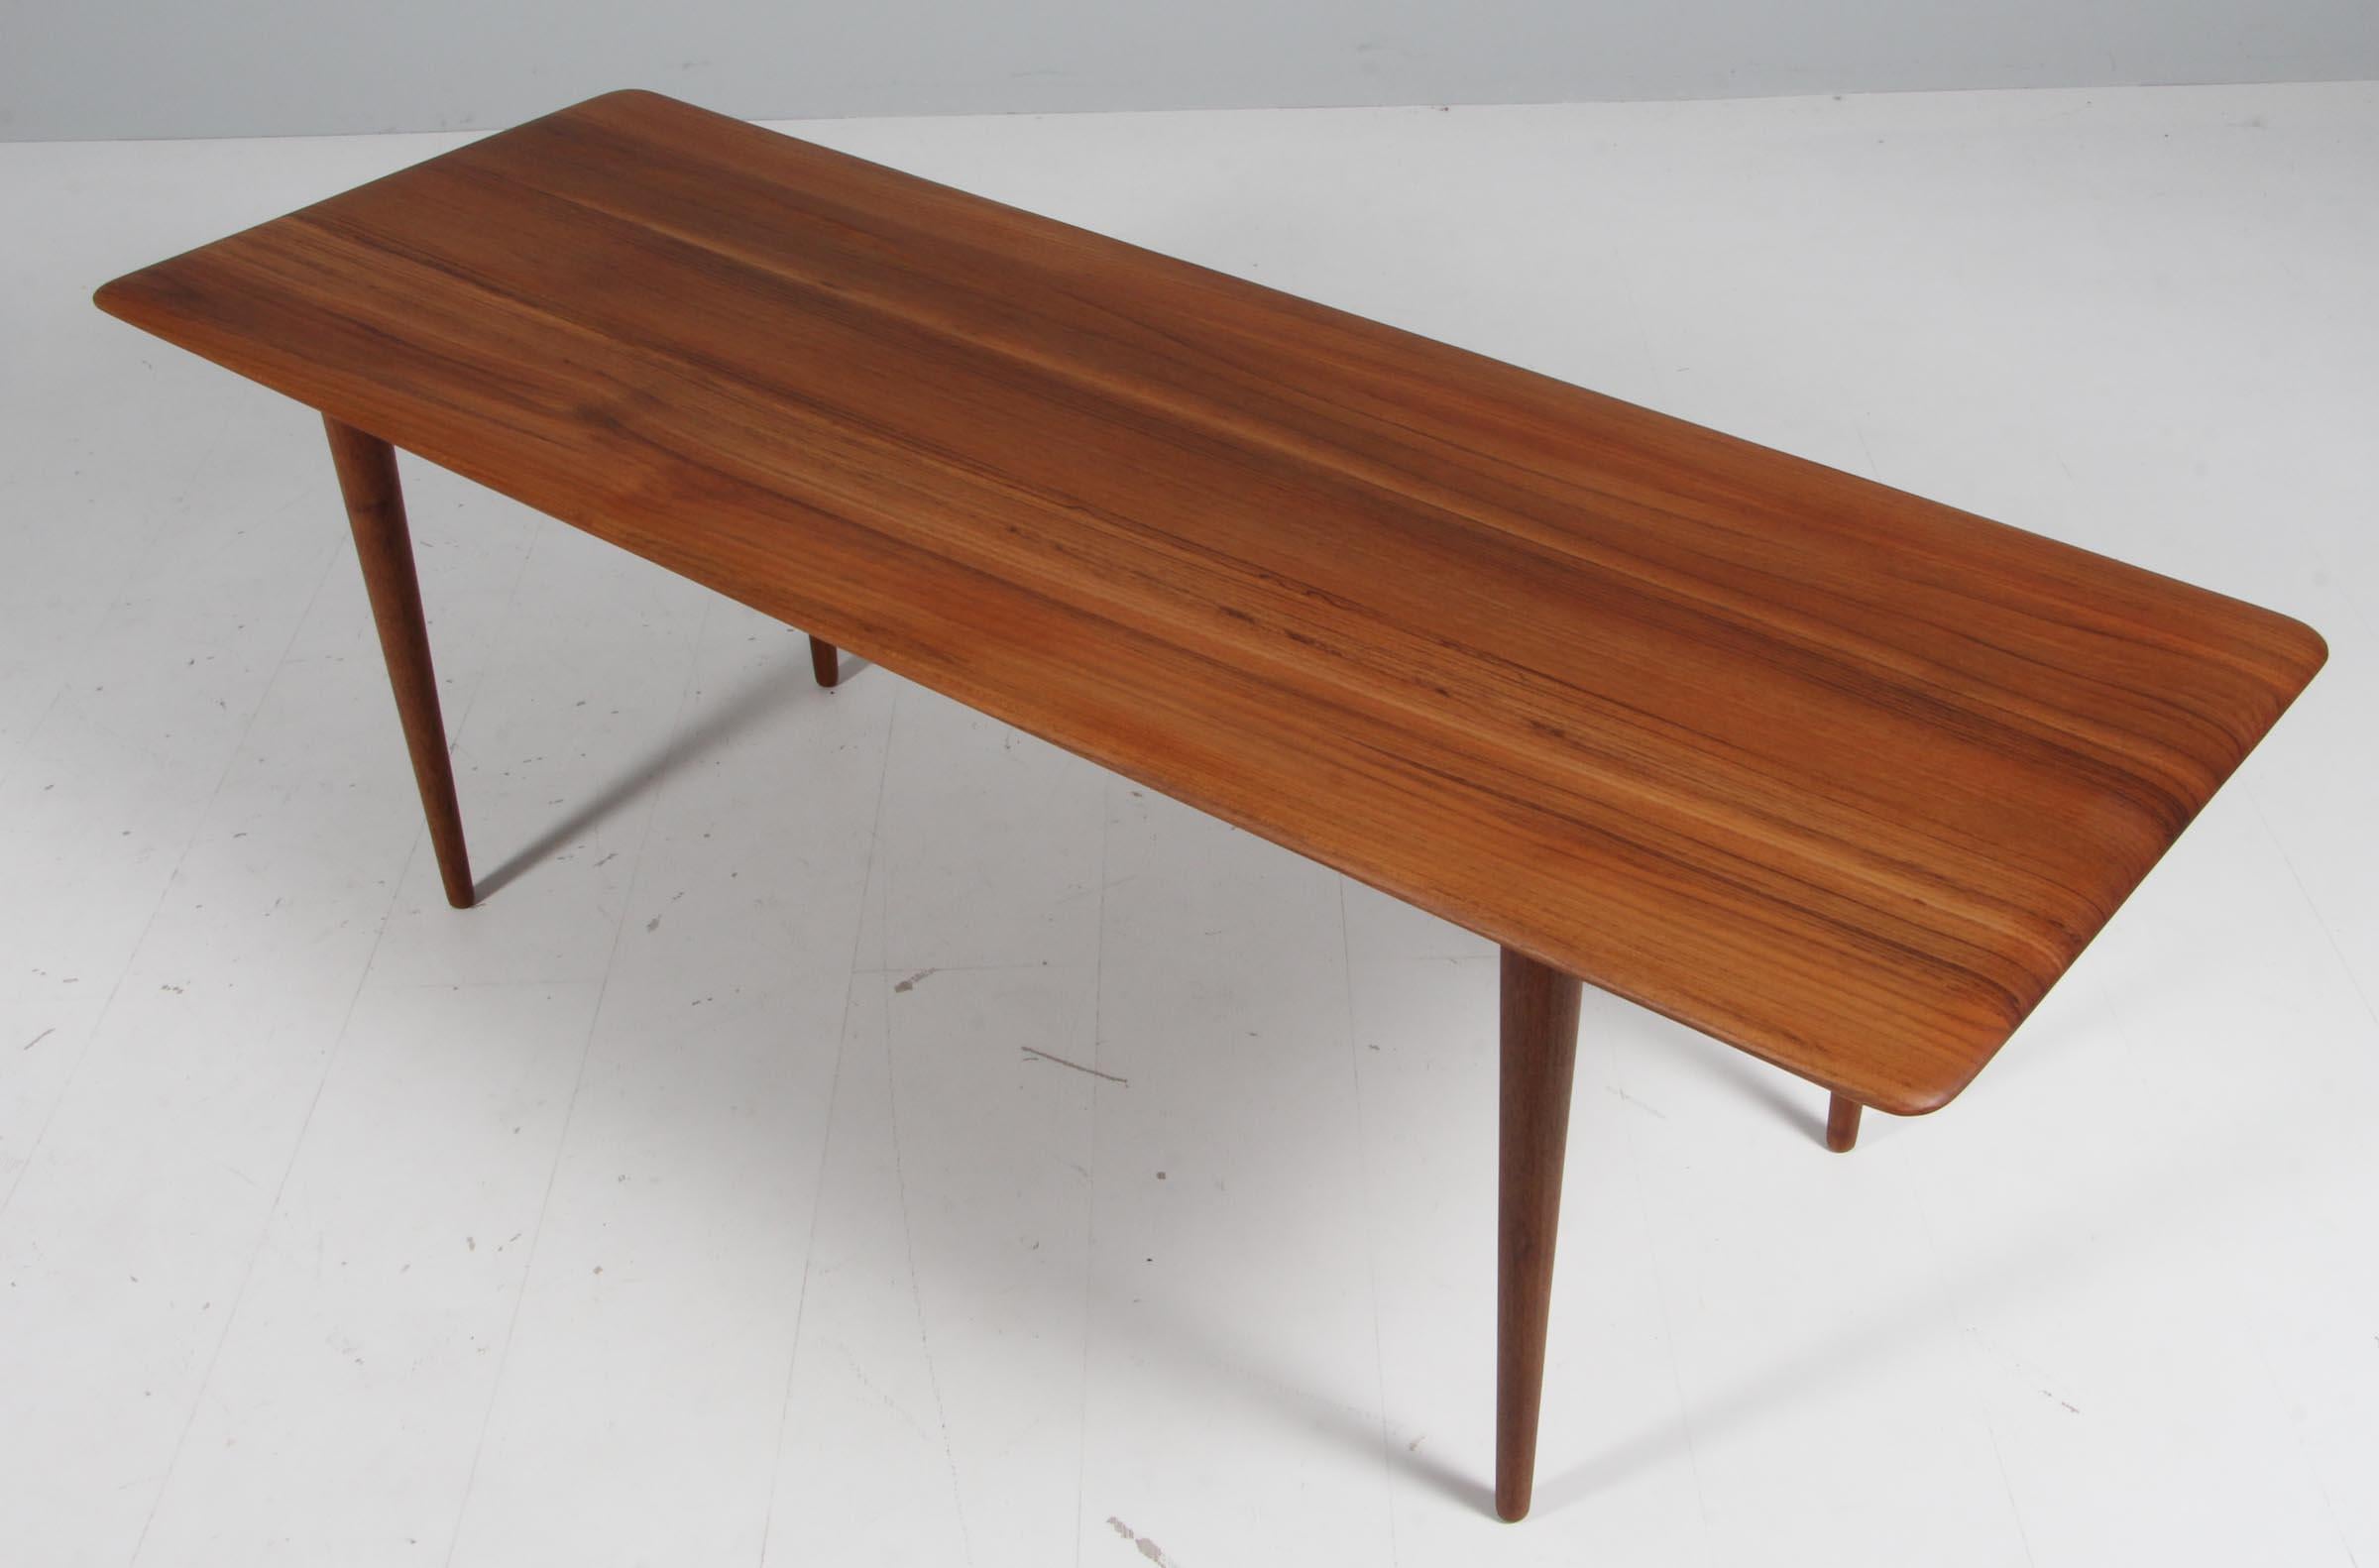 Table de canapé Nielsen de Peters Hvidt & Orla Mølgaard en teck vendu.

Fabriqué par France & Daverkosen dans les années 1960.